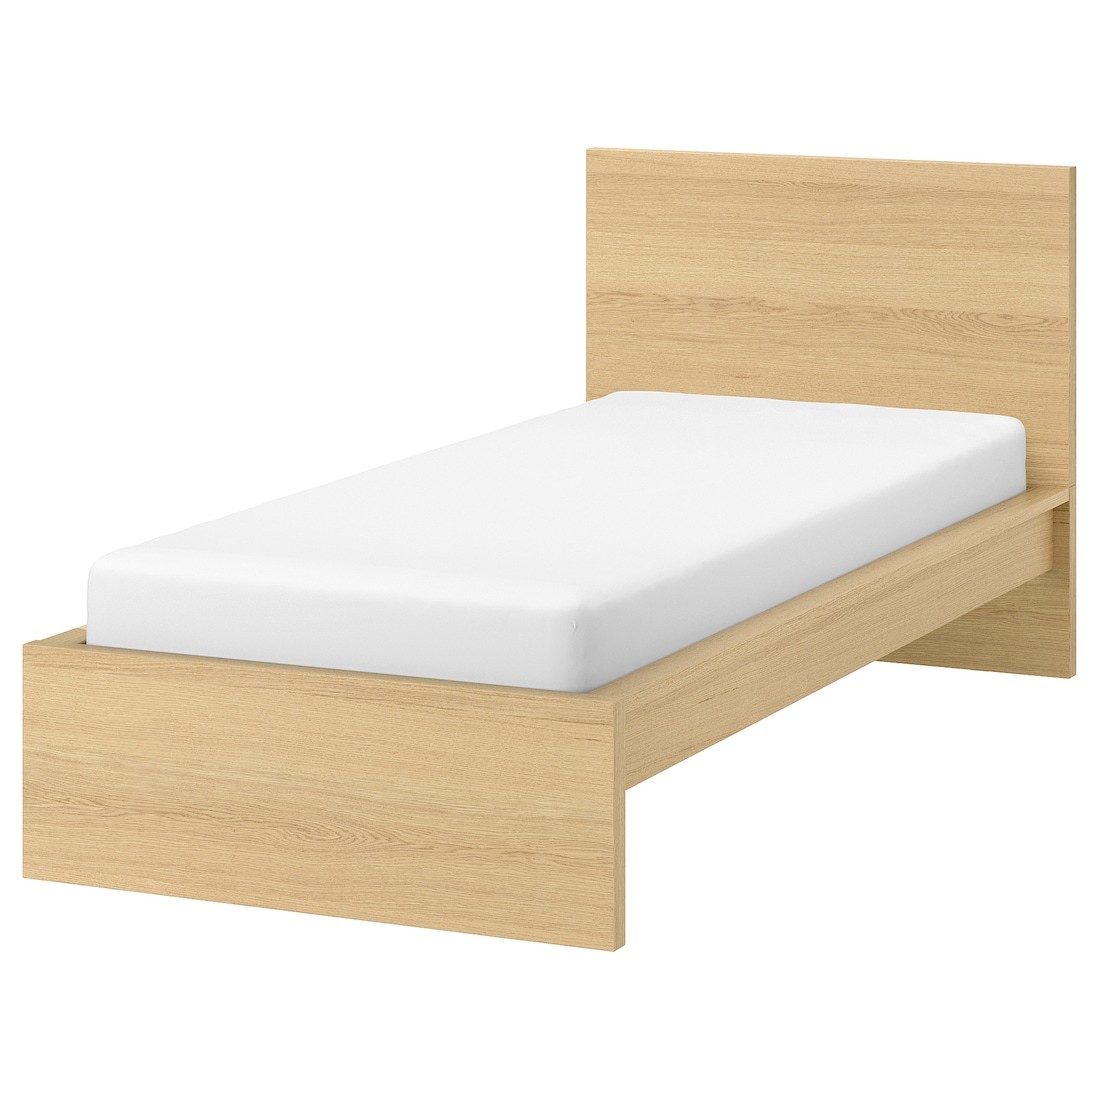 IKEA MALM МАЛЬМ Ліжко односпальне, високе, шпон дуба білений / Luröy, 90x200 см 19132289 | 191.322.89